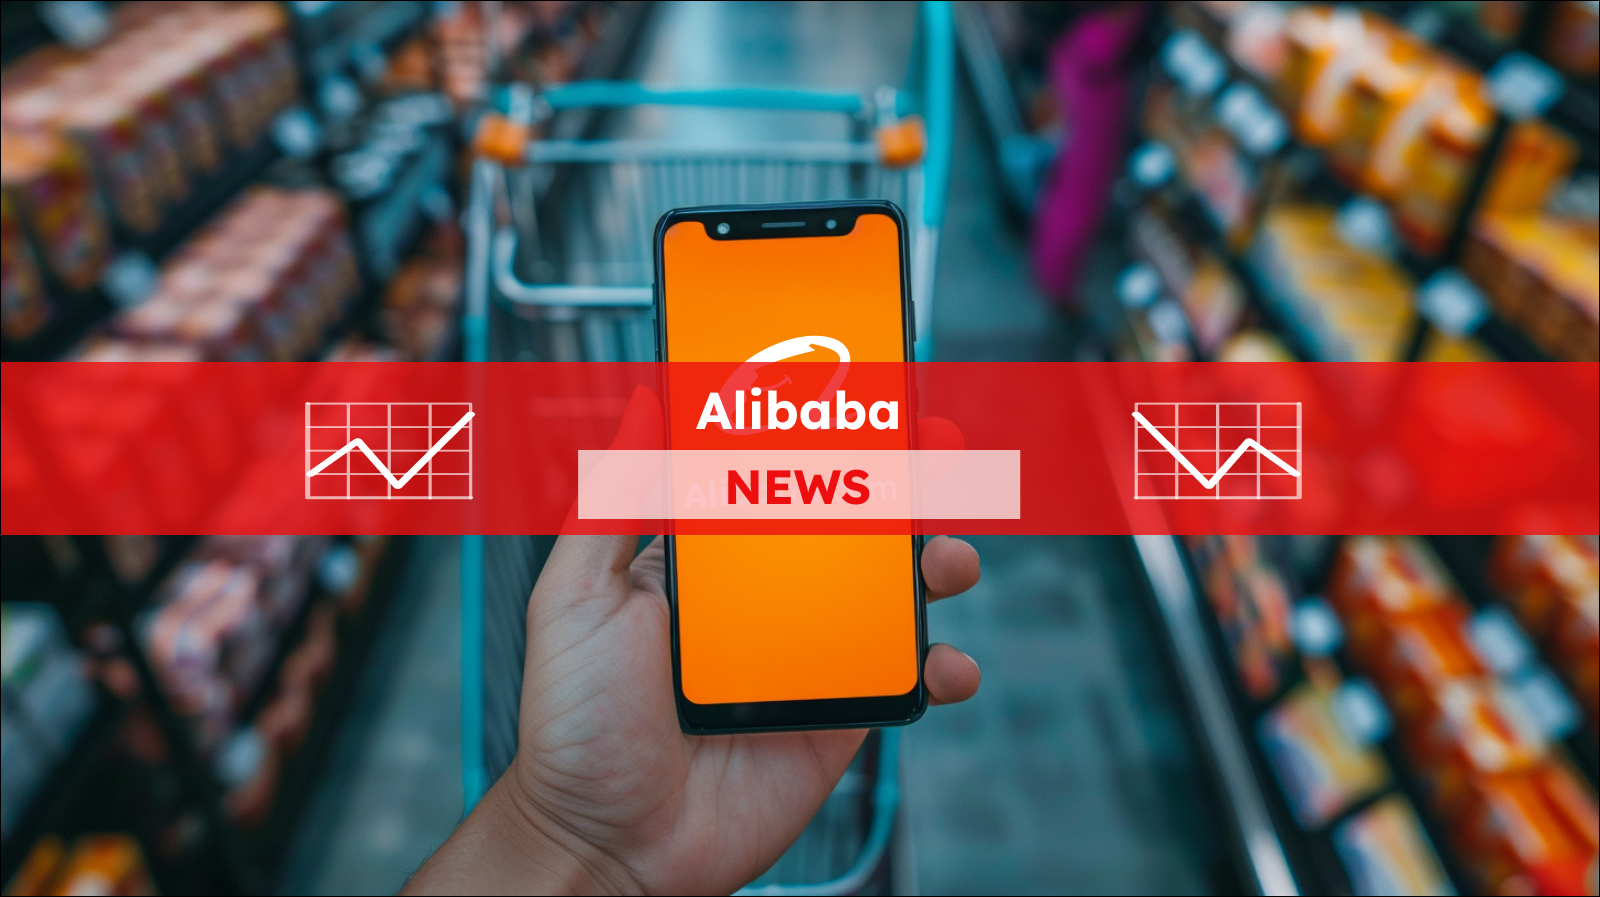 Eine Hand hält ein Smartphone mit dem Alibaba.com-Logo auf dem Bildschirm vor einem Einkaufswagen in einem Supermarkt, mit einem Alibaba NEWS Banner